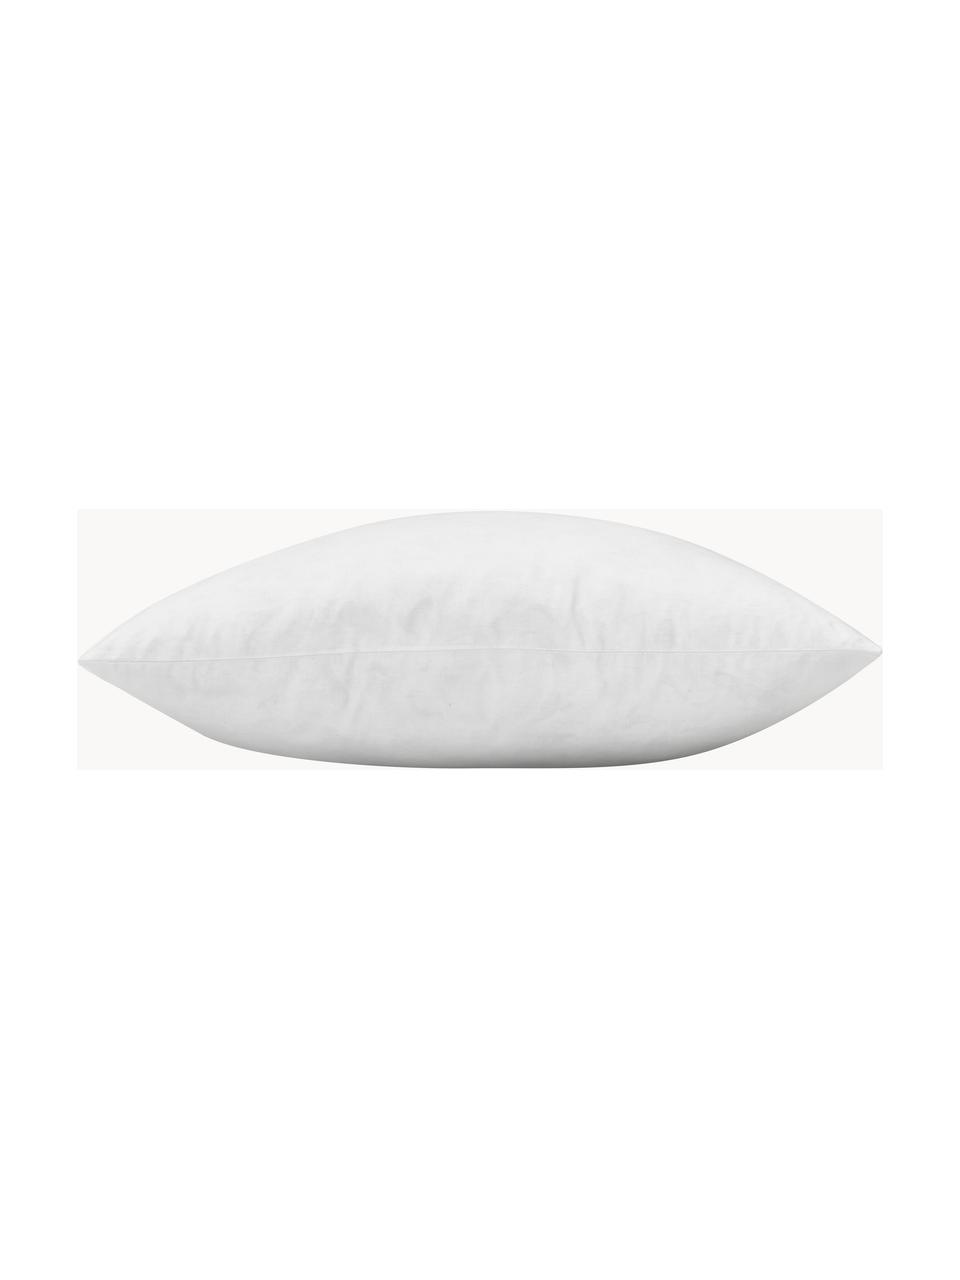 Wkład do poduszki dekoracyjnej Comfort, różne rozmiary, Tapicerka: 80% bawełna, 20% bawełna , Biały, S 50 x D 50 cm